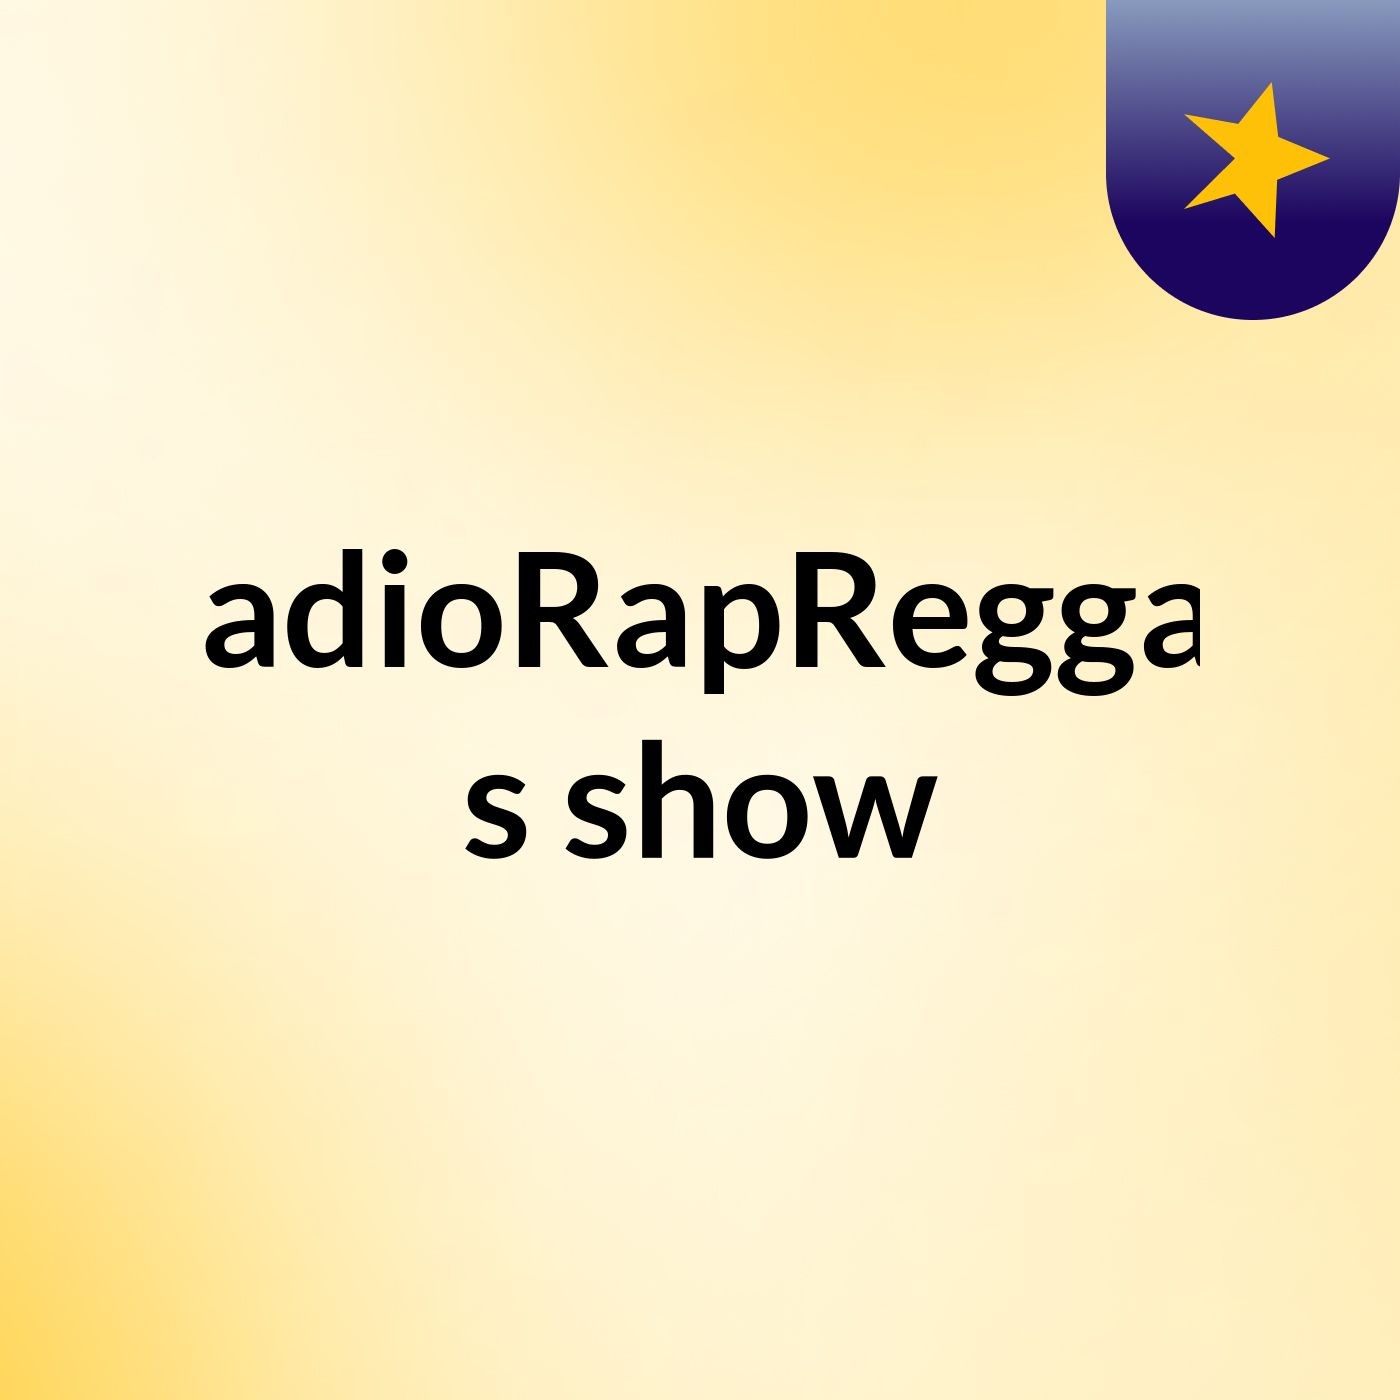 RadioRapReggae's show